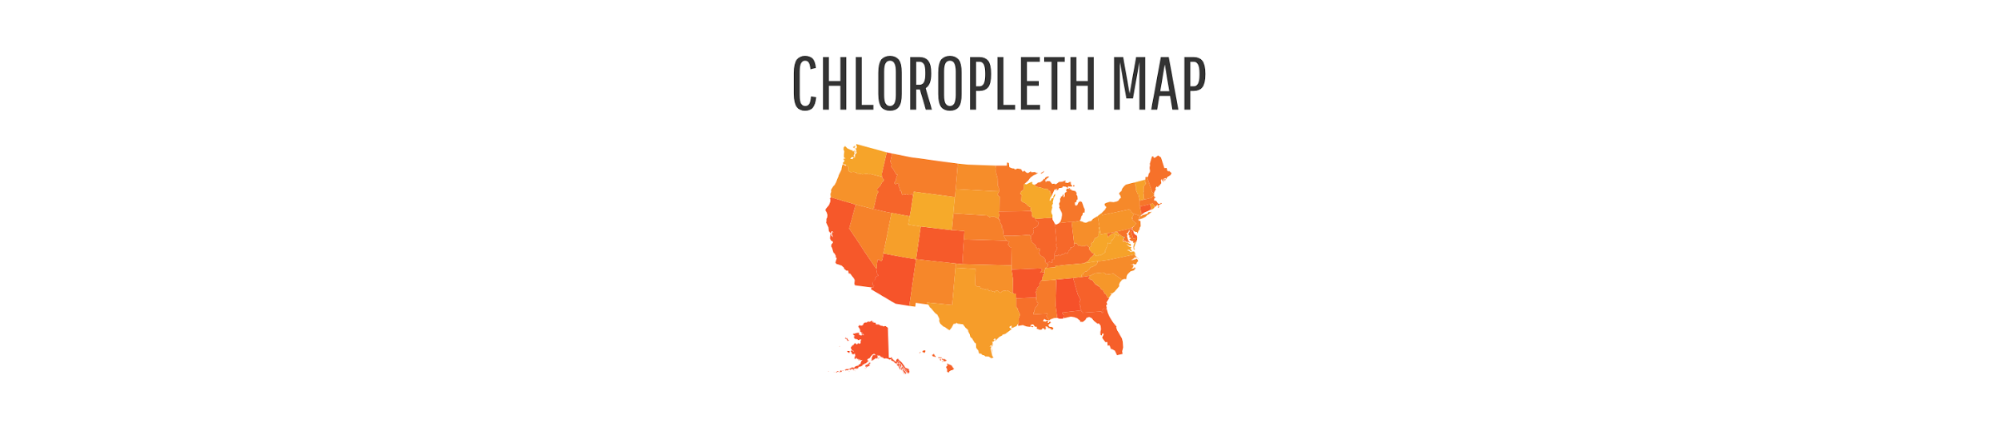 Chloropleth map